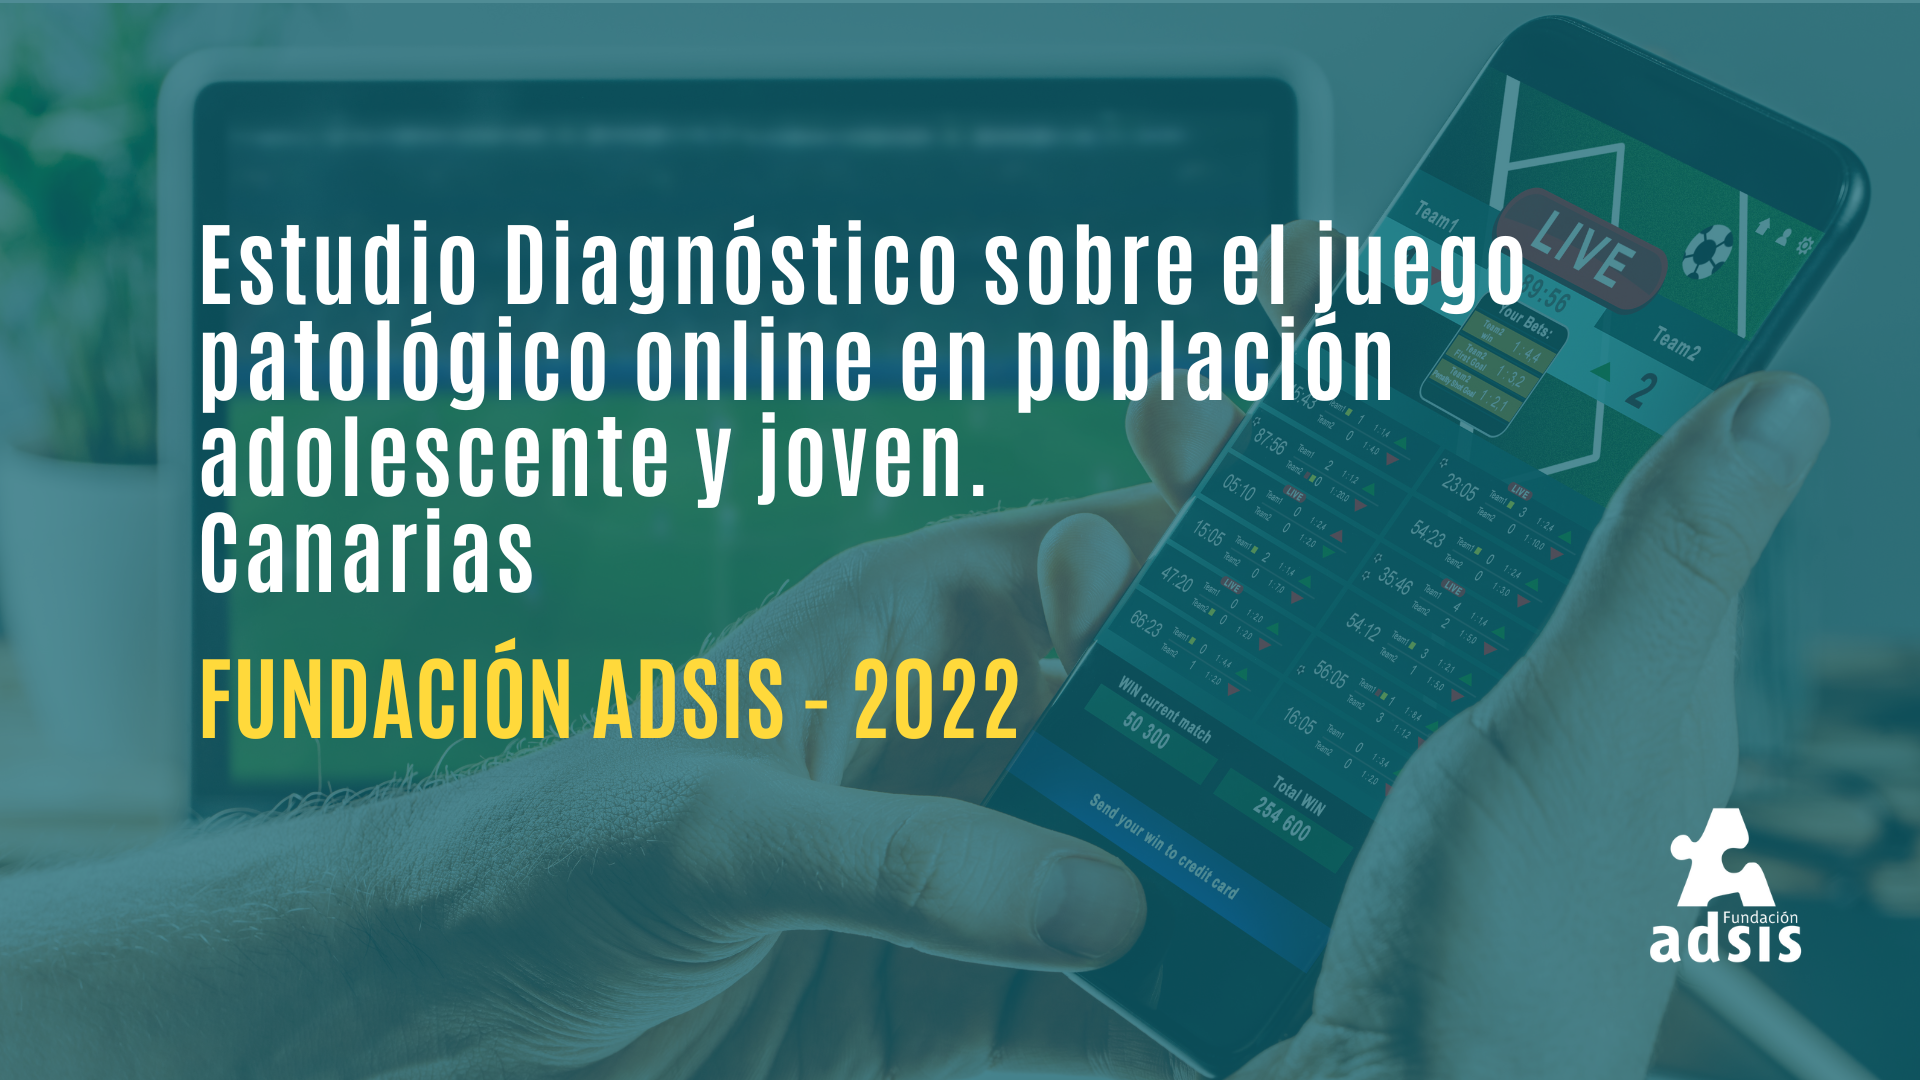 Estudio Diagnóstico sobre el juego patológico online en población adolescente y joven - Canarias - Fundación Adsis 2022